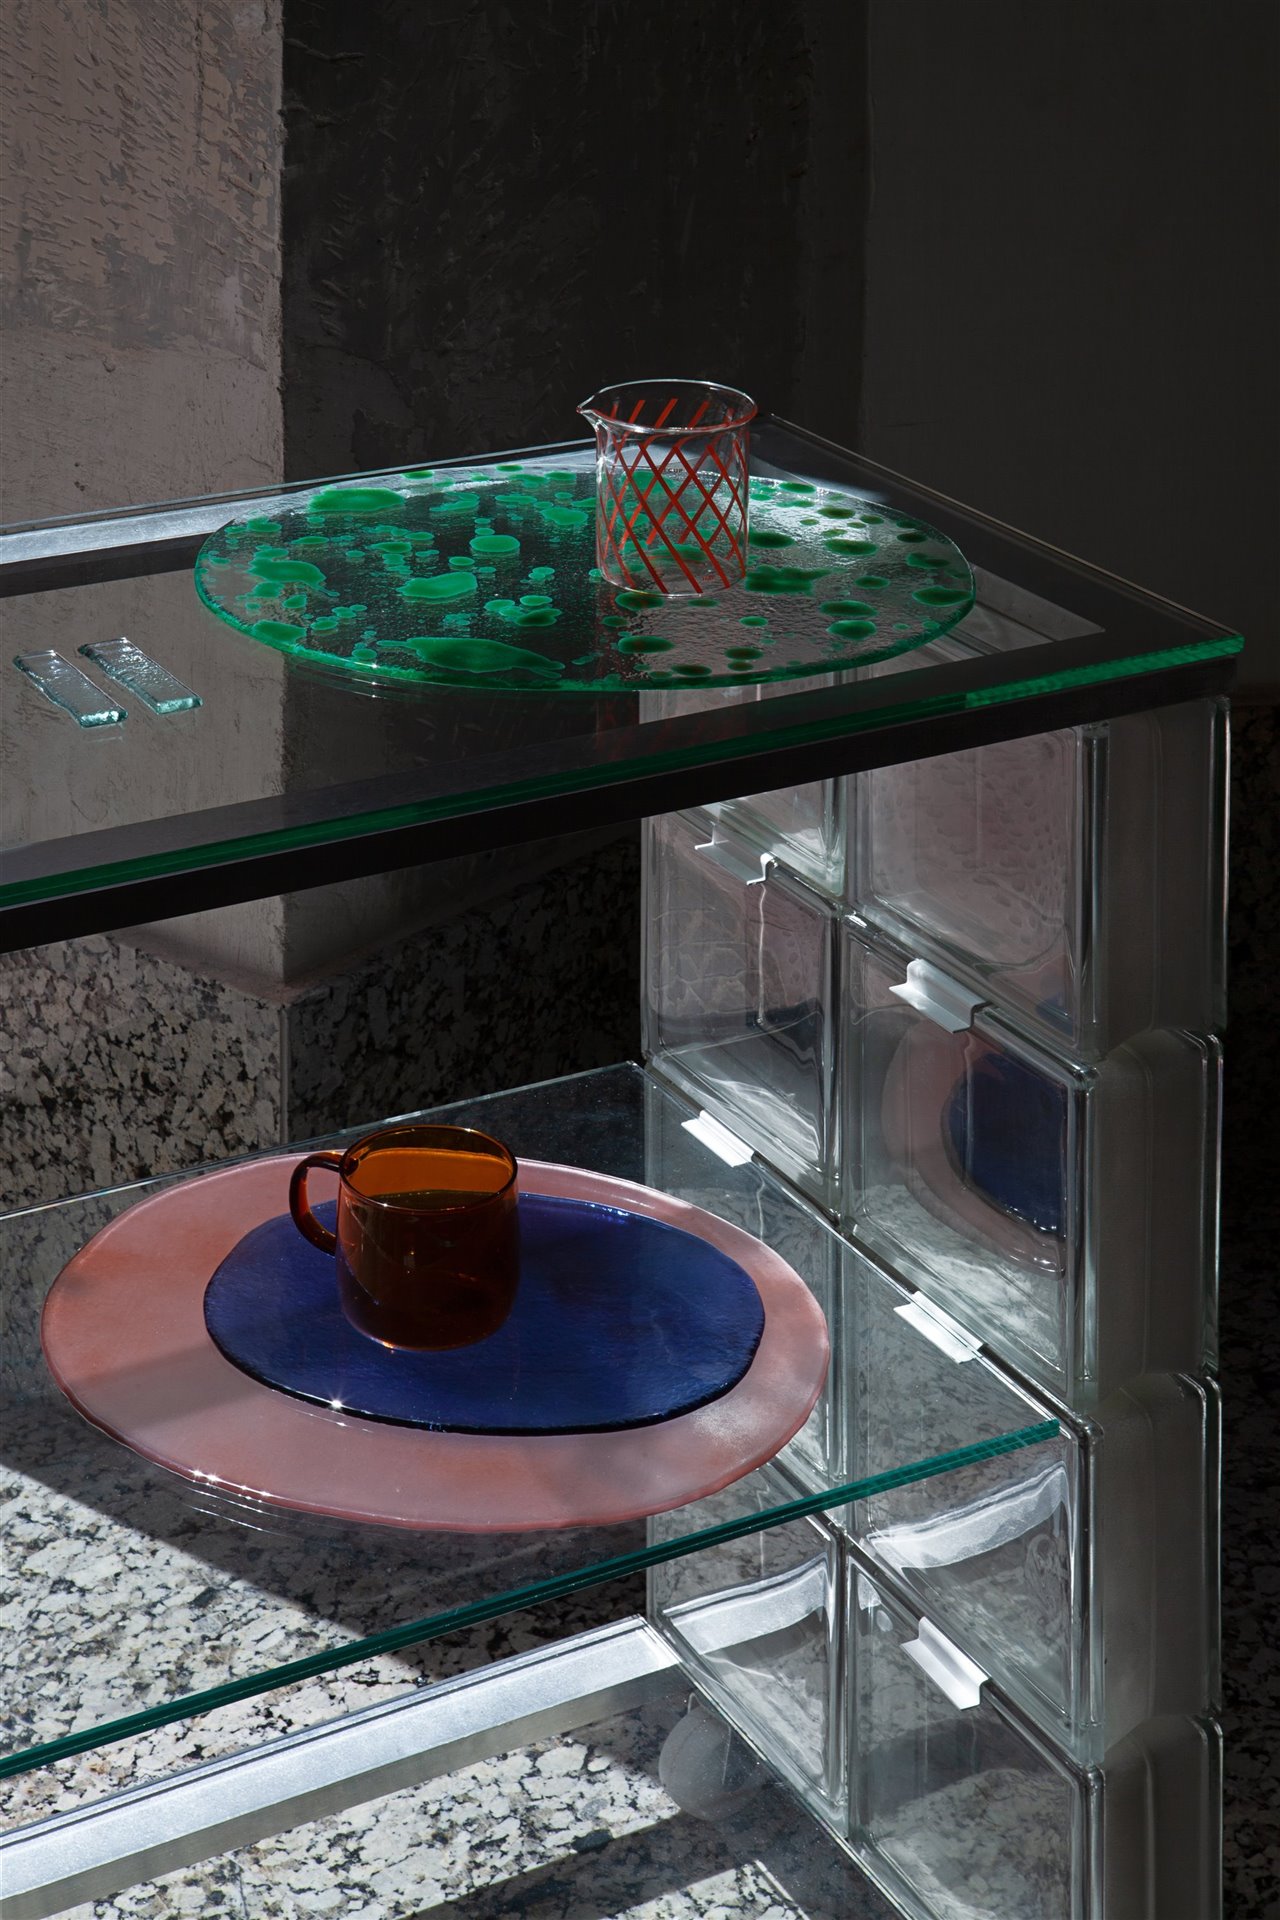 En su colaboración con HECHO, desde su taller en Mallorca Mirenchu crea un nuevo concepto de bandeja realizado mediante el vidrio flotado a las que se han inyectado notas de color.